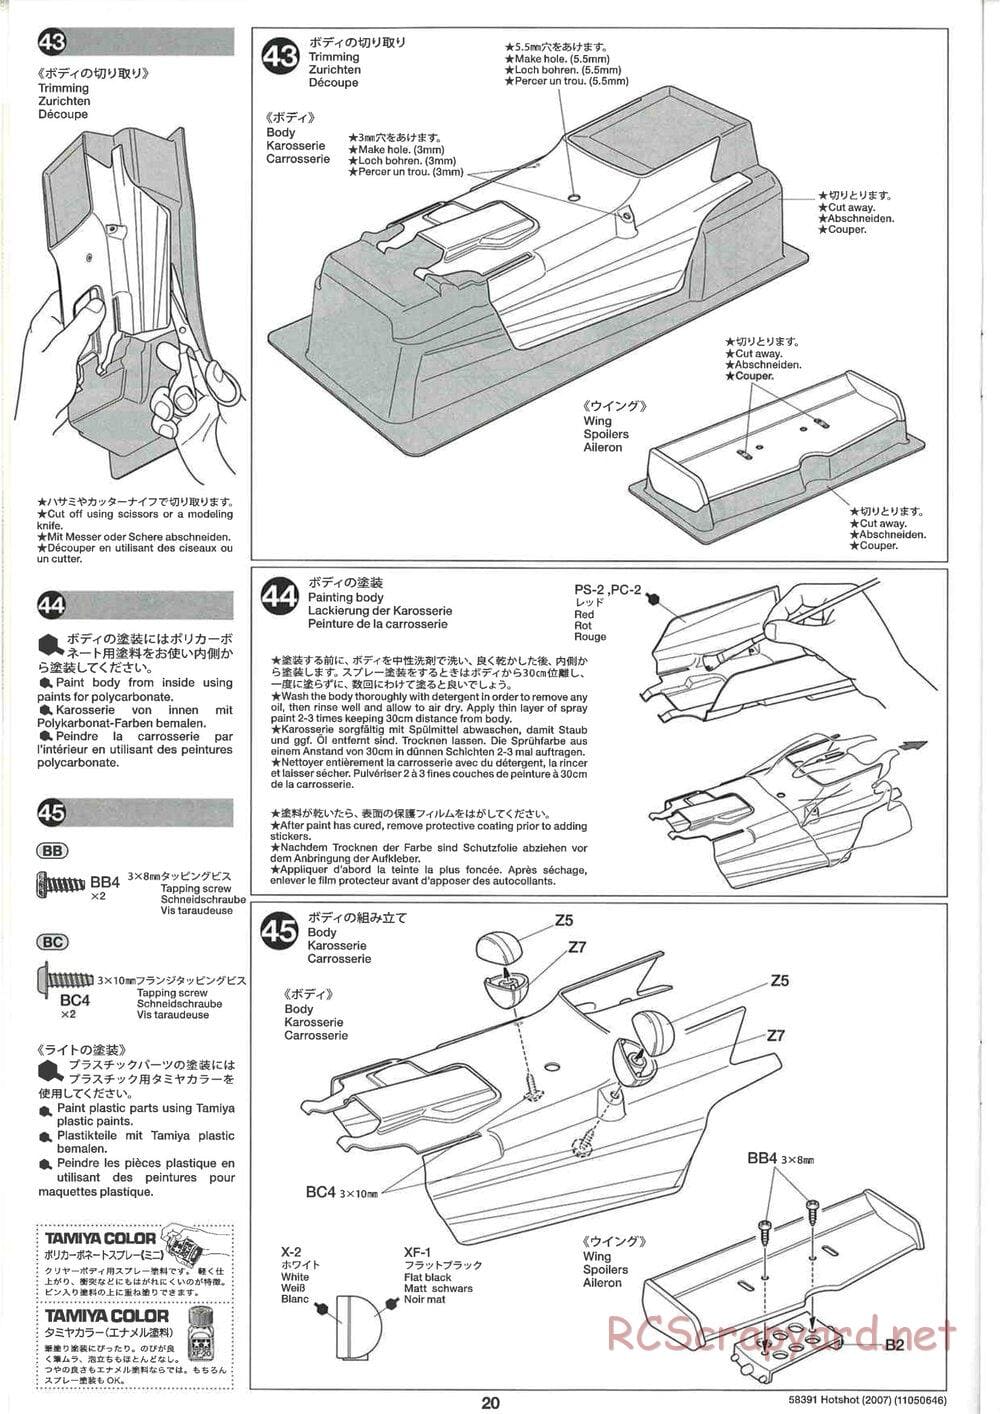 Tamiya - Hotshot - 2007 - HS Chassis - Manual - Page 20